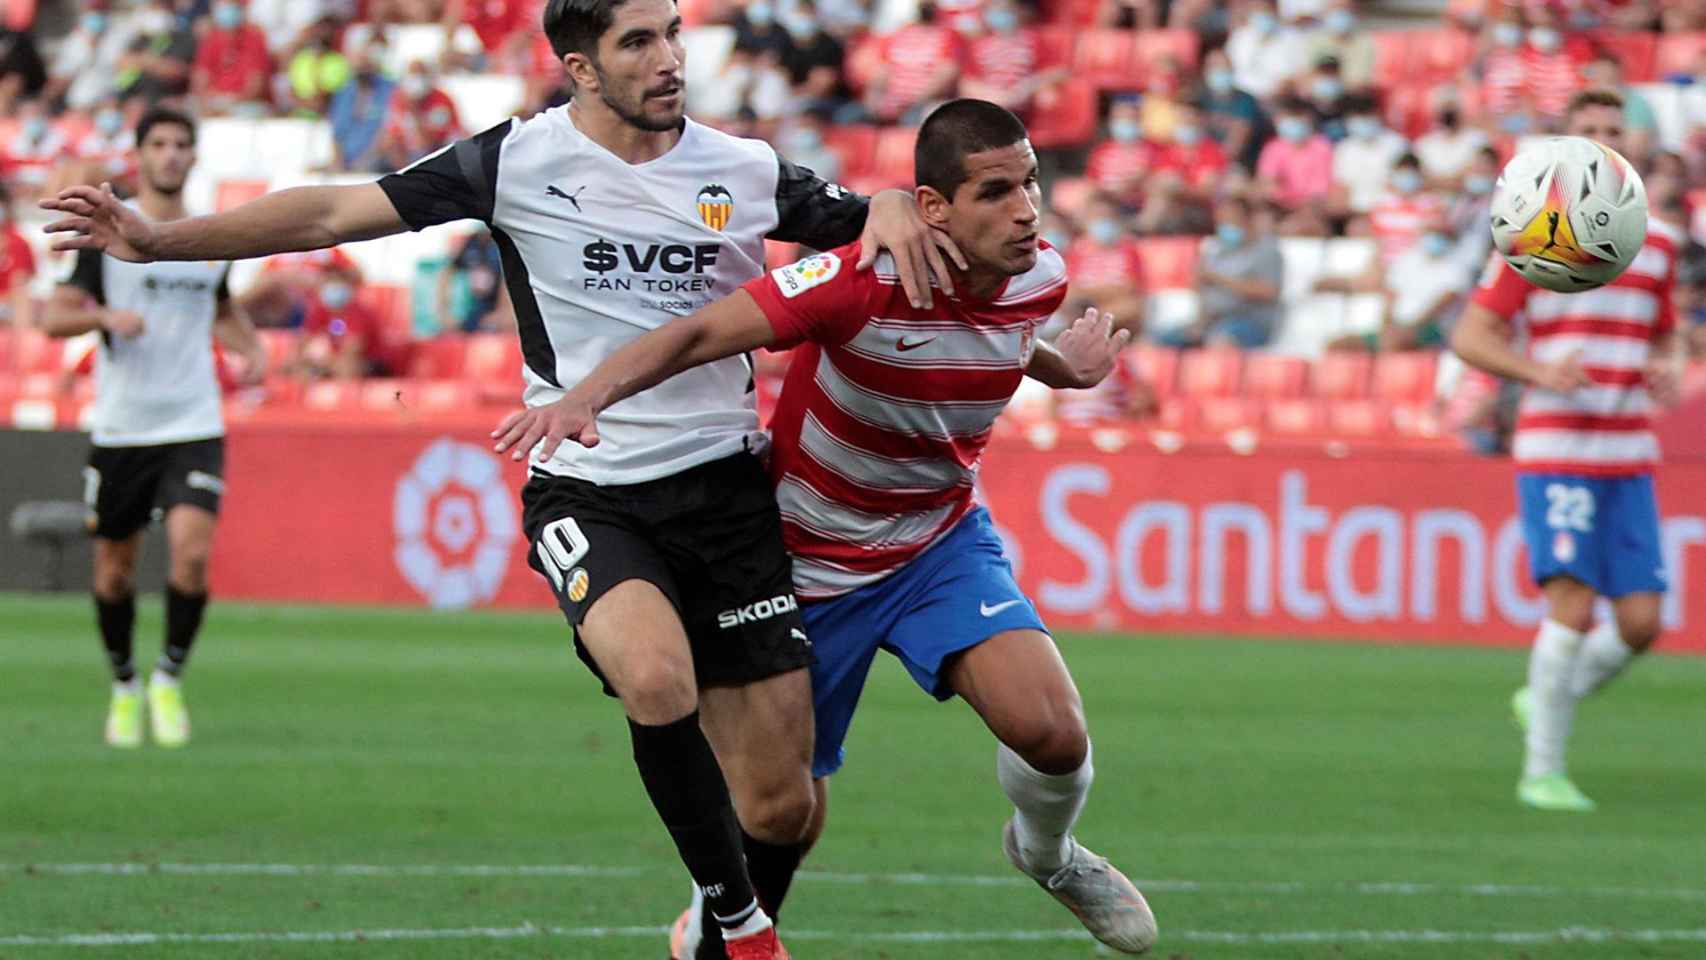 Carlos Soler pelea un balón en el Granada - Valencia